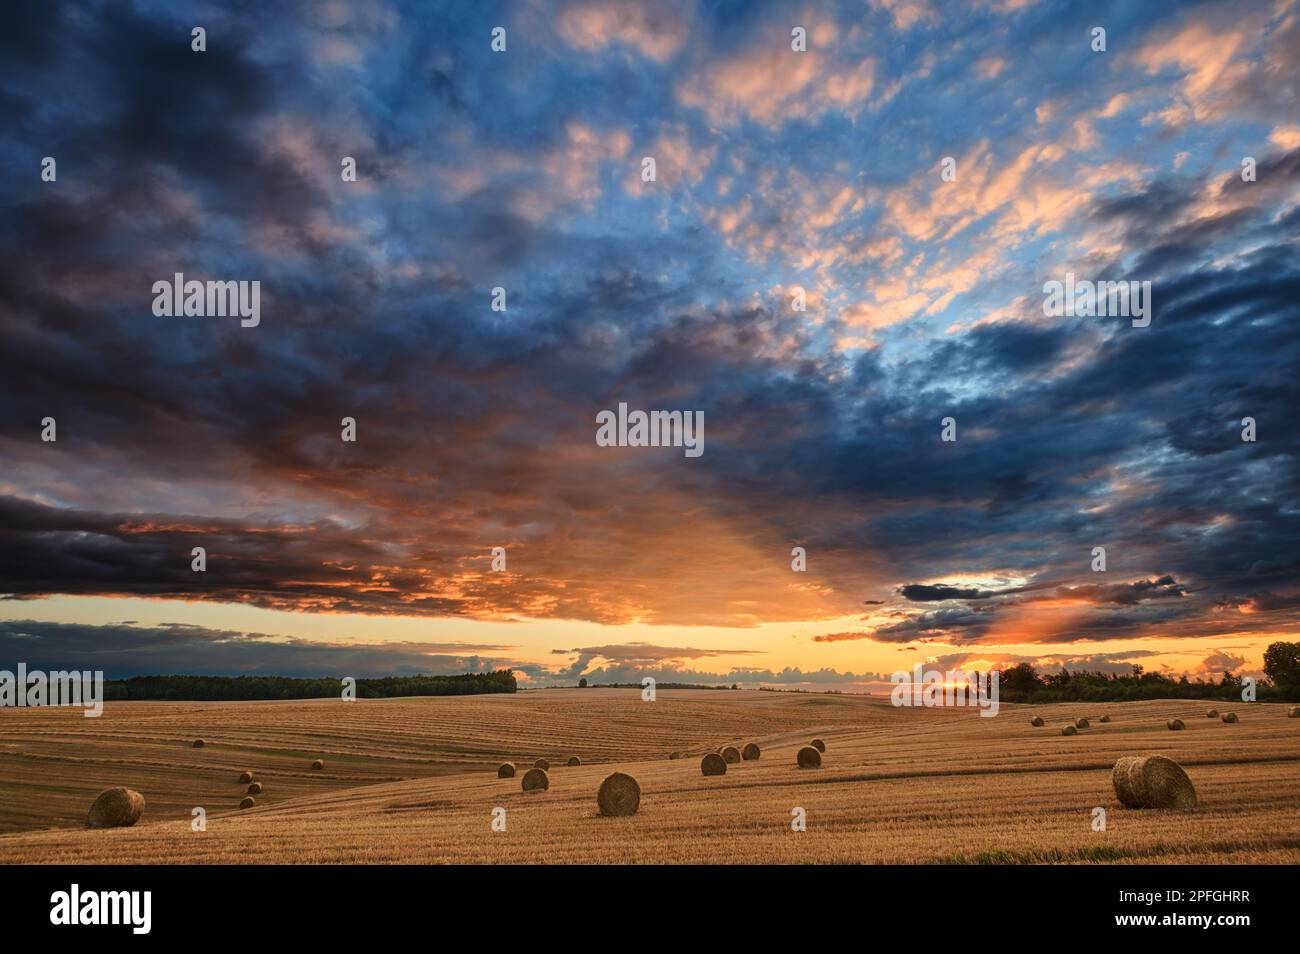 Chaume dans un champ avec des balles sous un ciel spectaculaire avec des nuages à travers lesquels les rayons du soleil brillent Banque D'Images